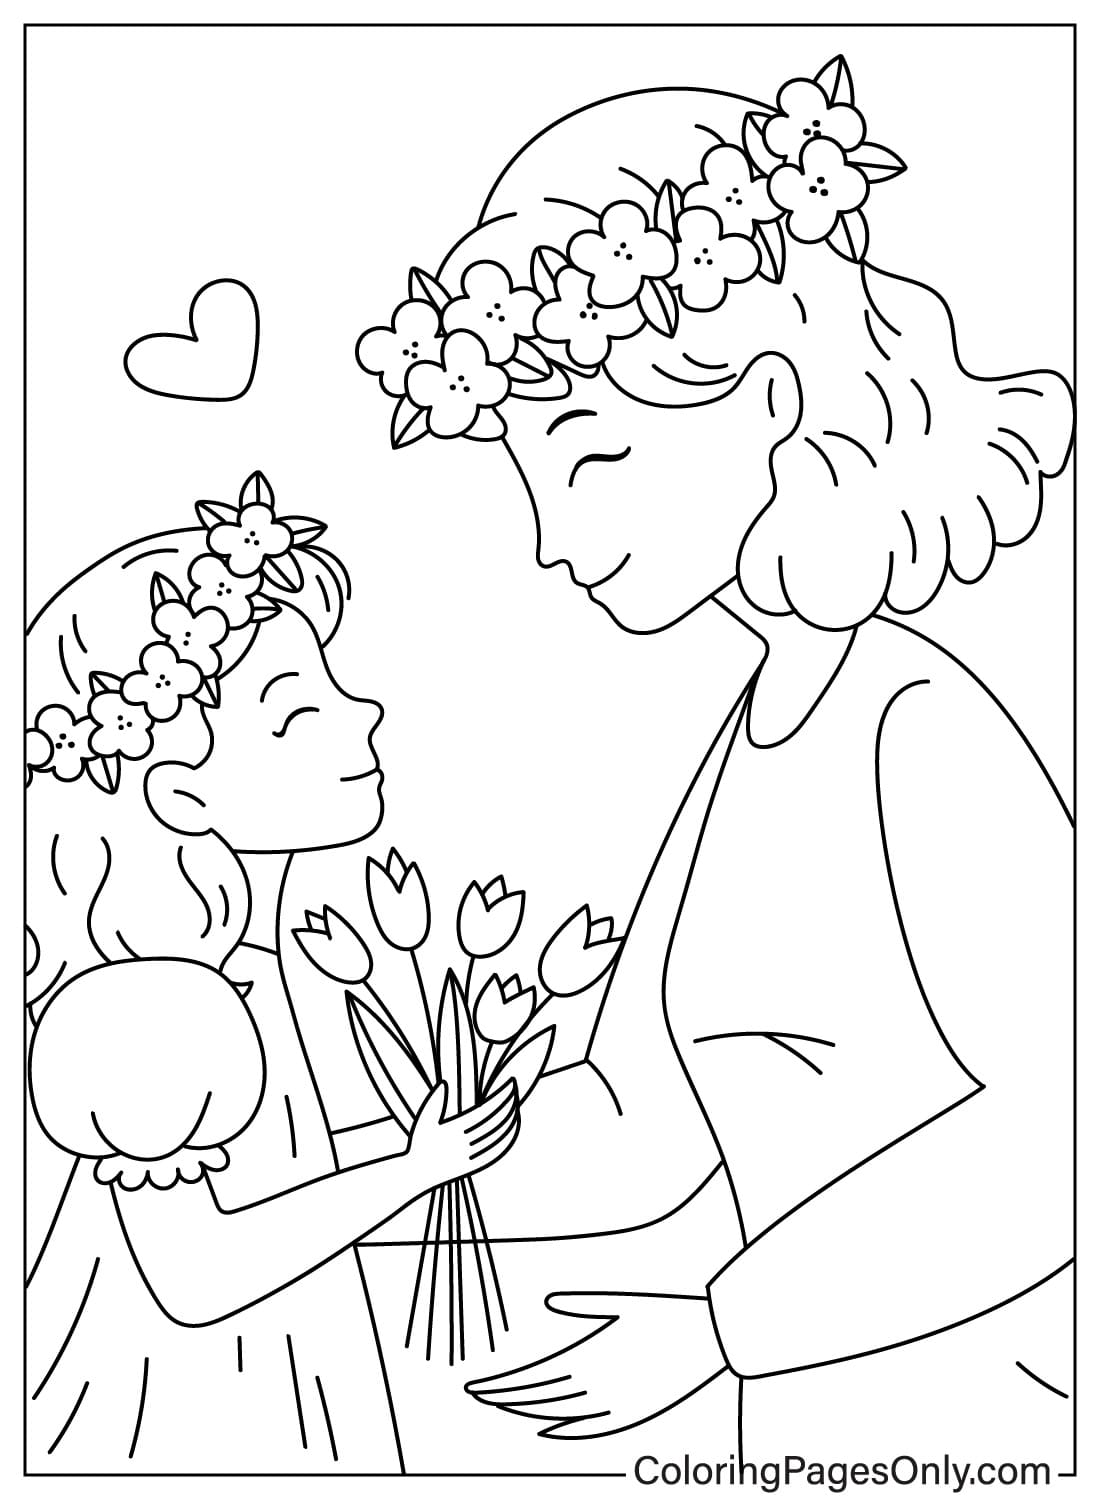 Tochter schenkt Mutter Blumen zum Muttertag